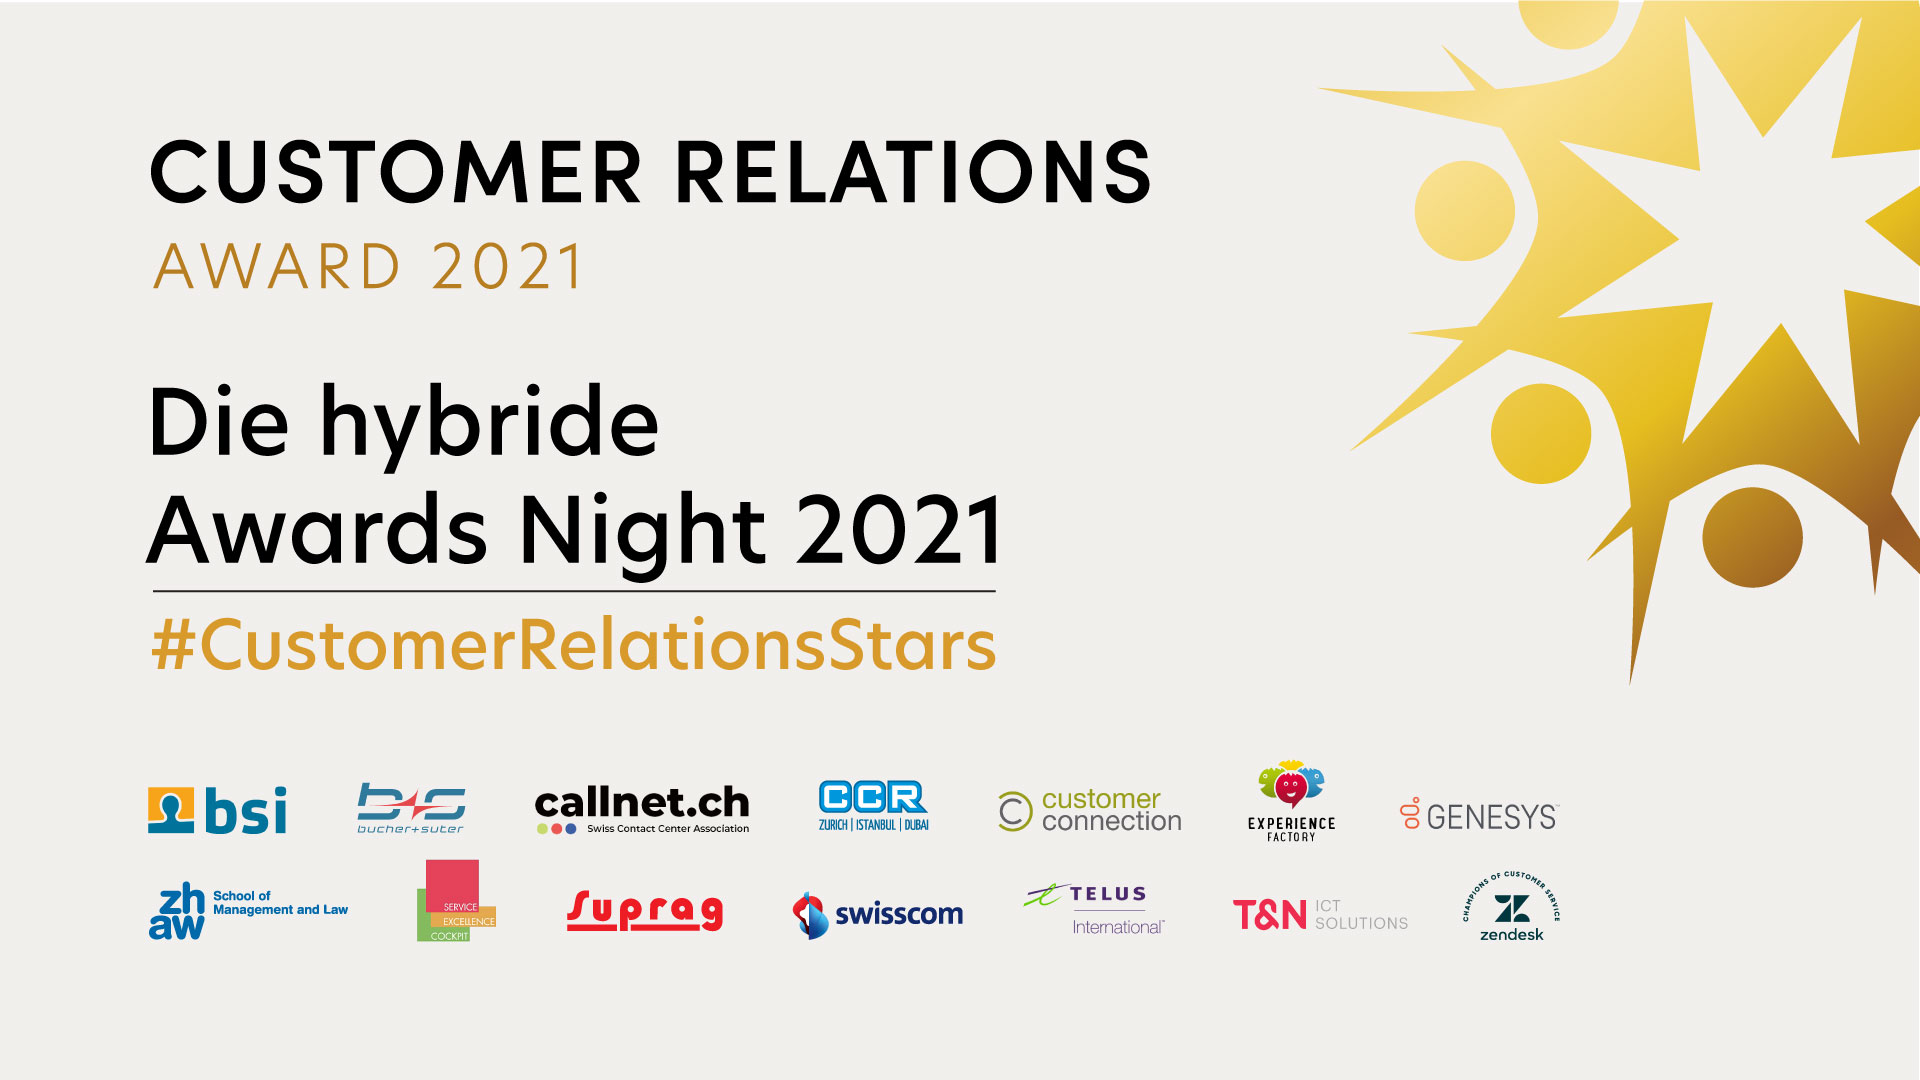 Awards Night 2021 - Film ab_Customer Relations Award 2021_cmm360